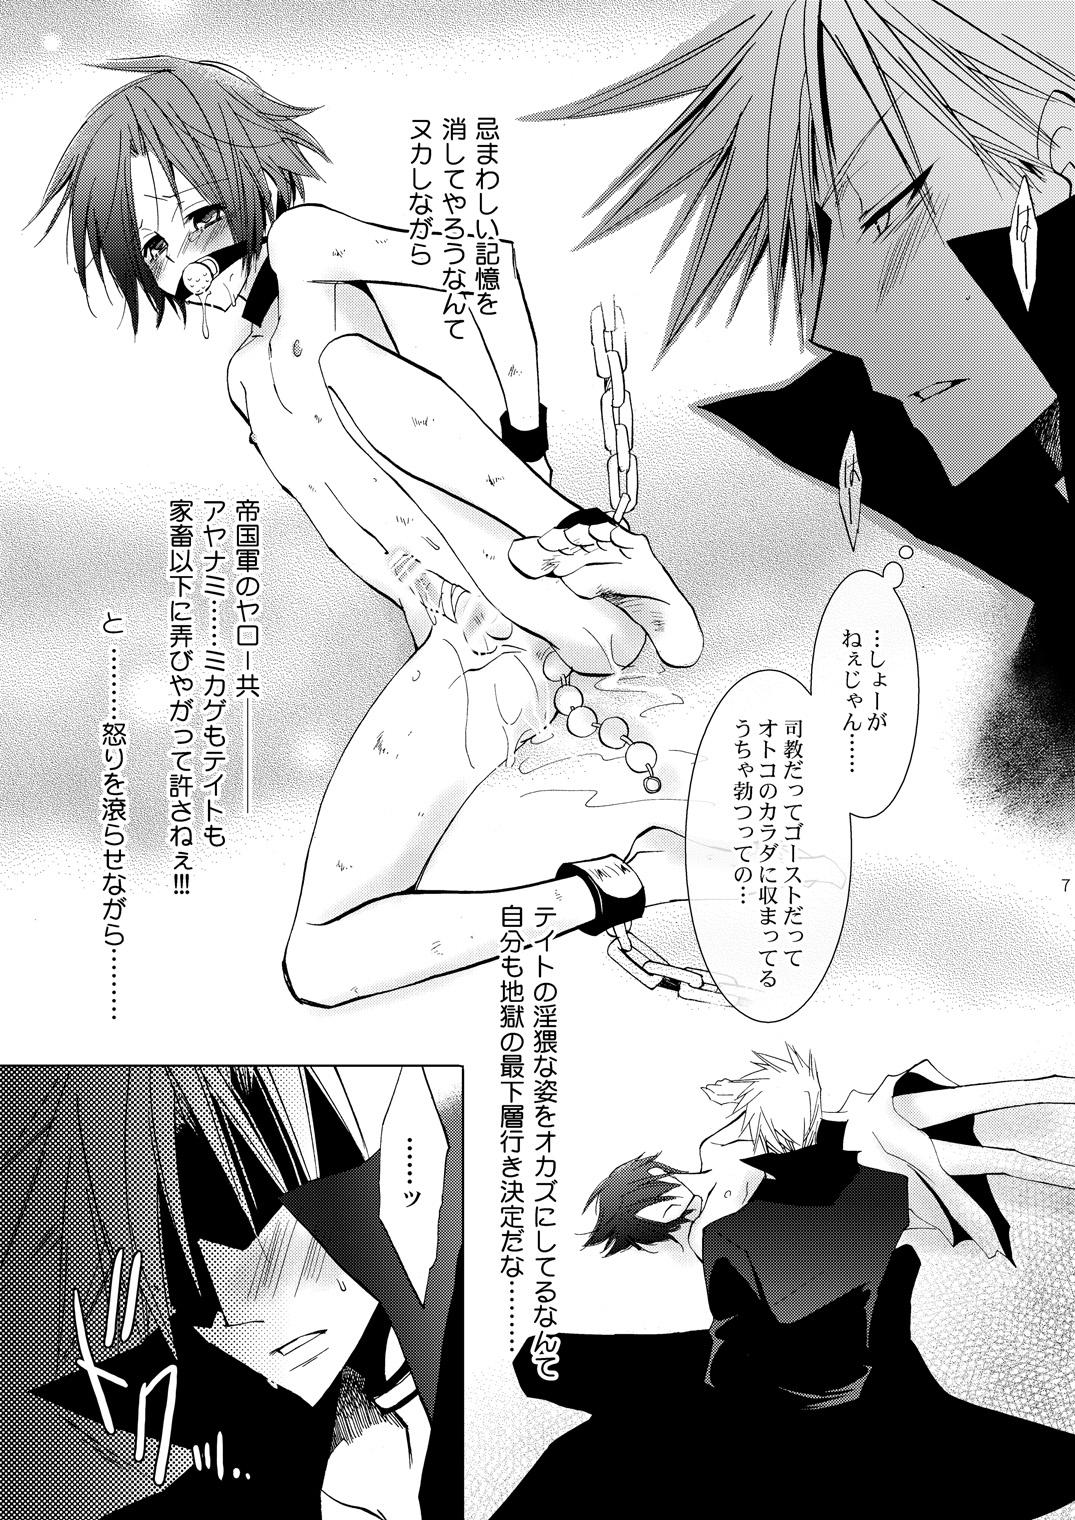 Titjob Hikatokage wa futatsu de hitotsu - 07-ghost Fleshlight - Page 6